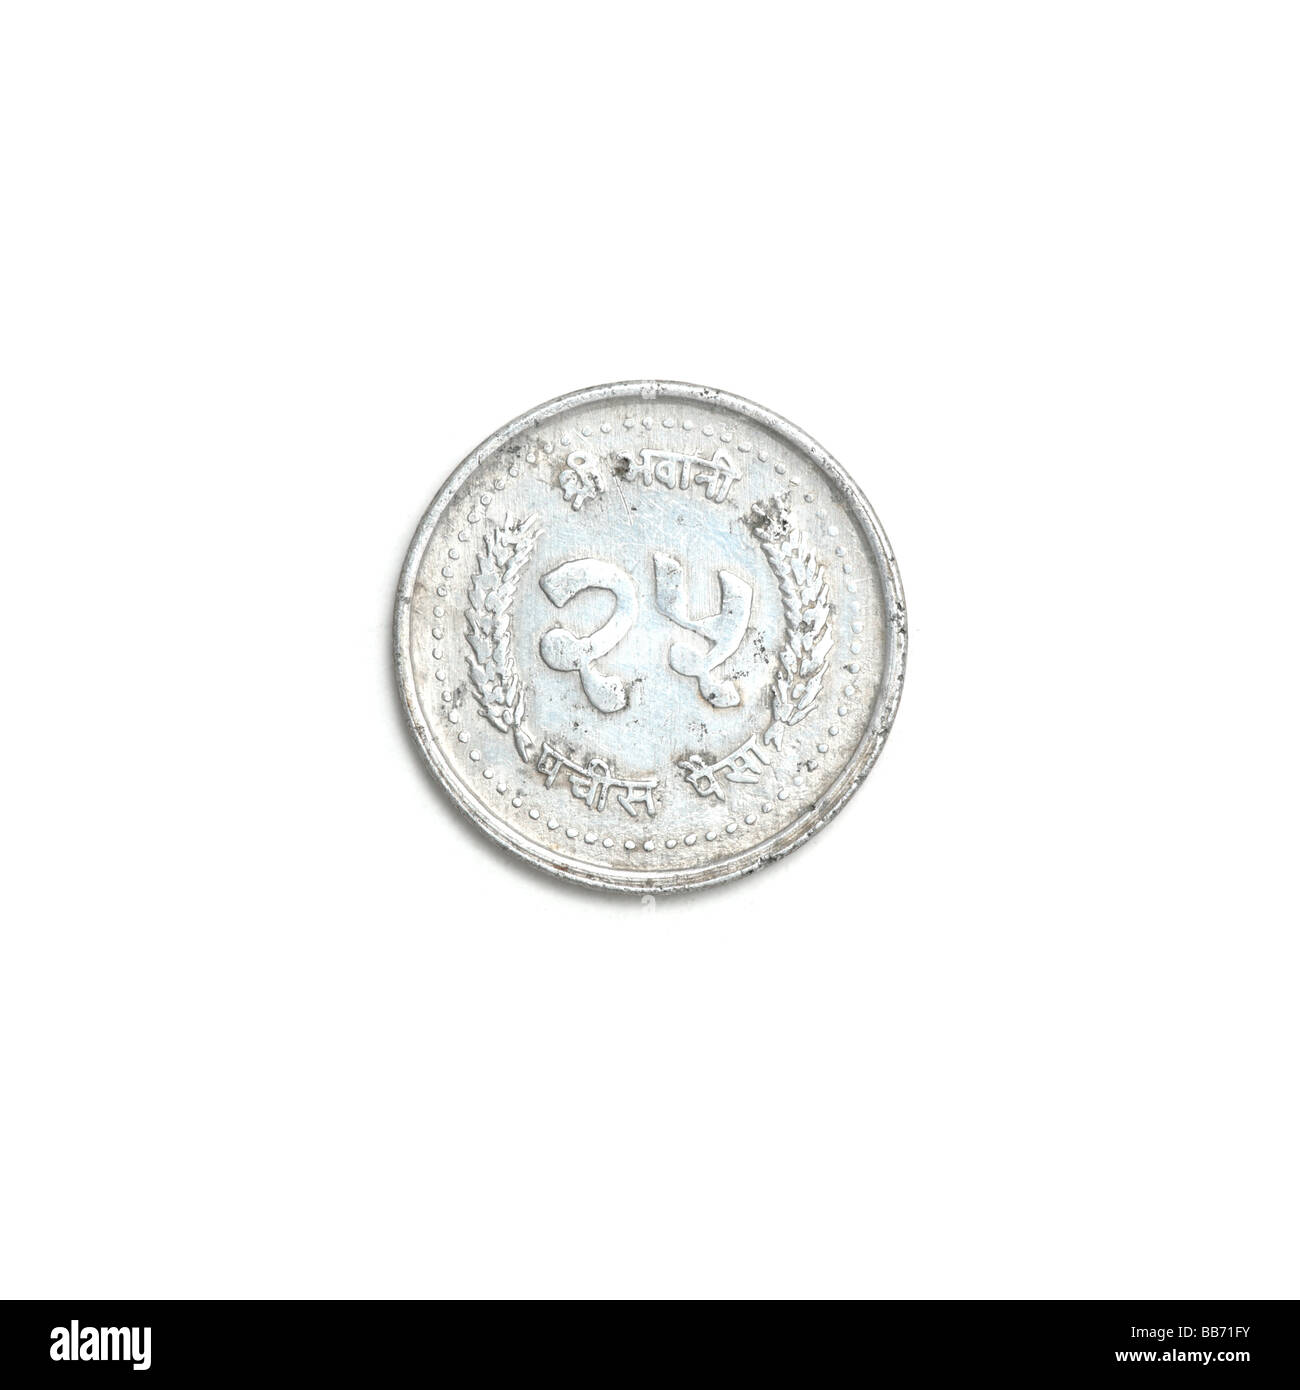 Nepalese 25 paisa coin Stock Photo